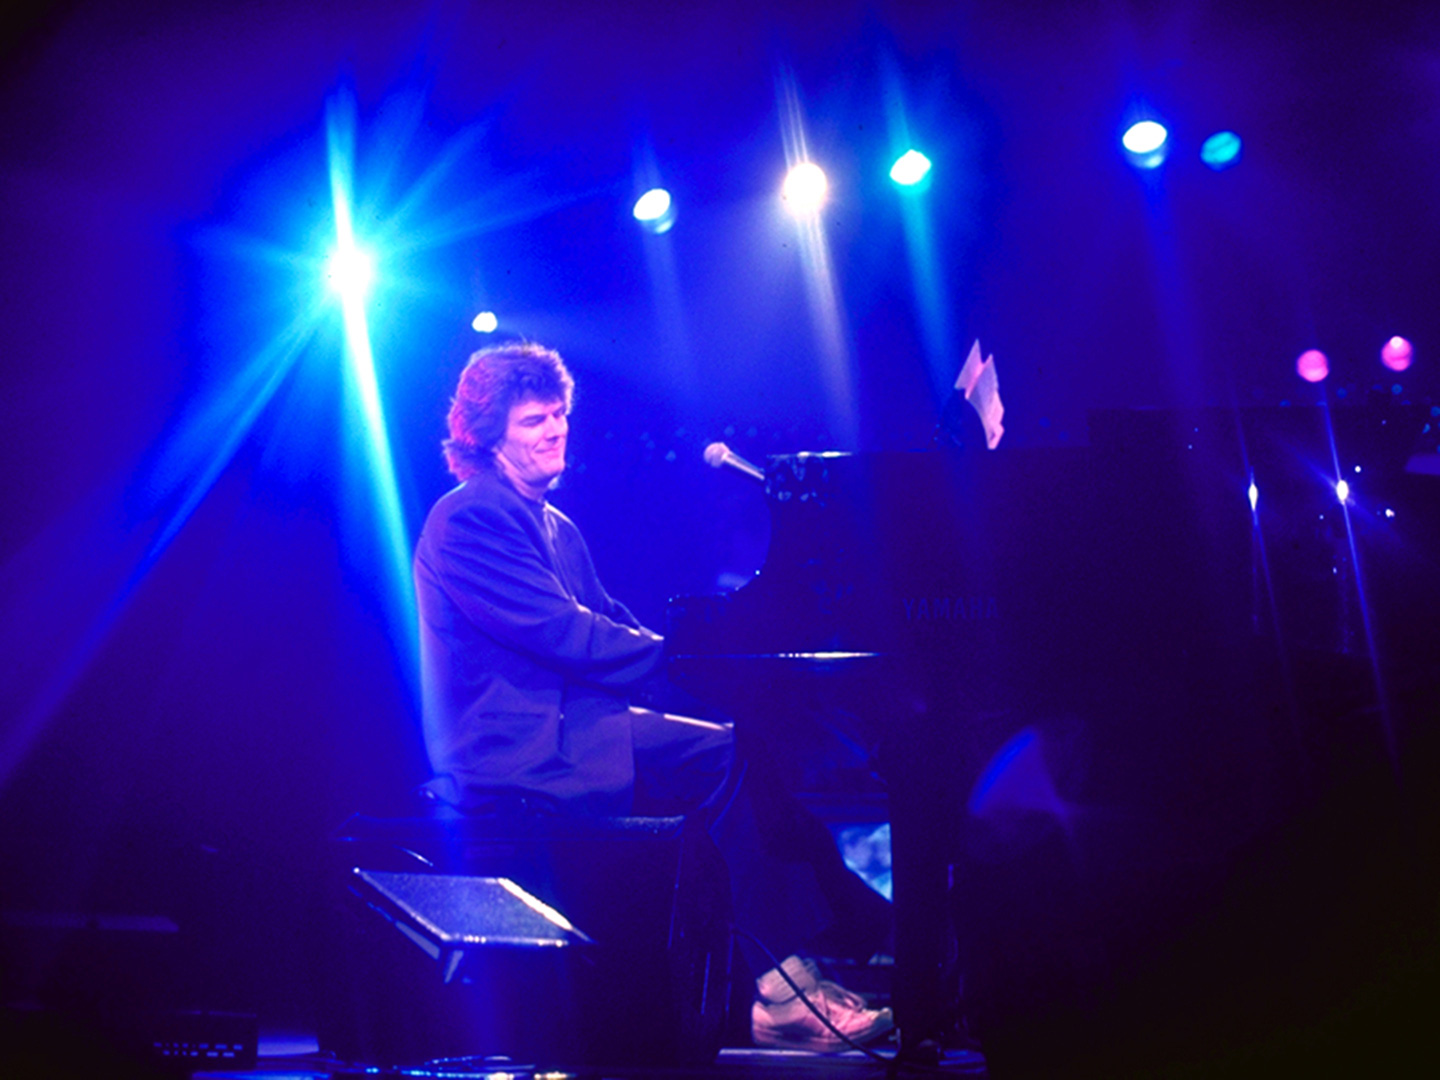 David Foster at piano